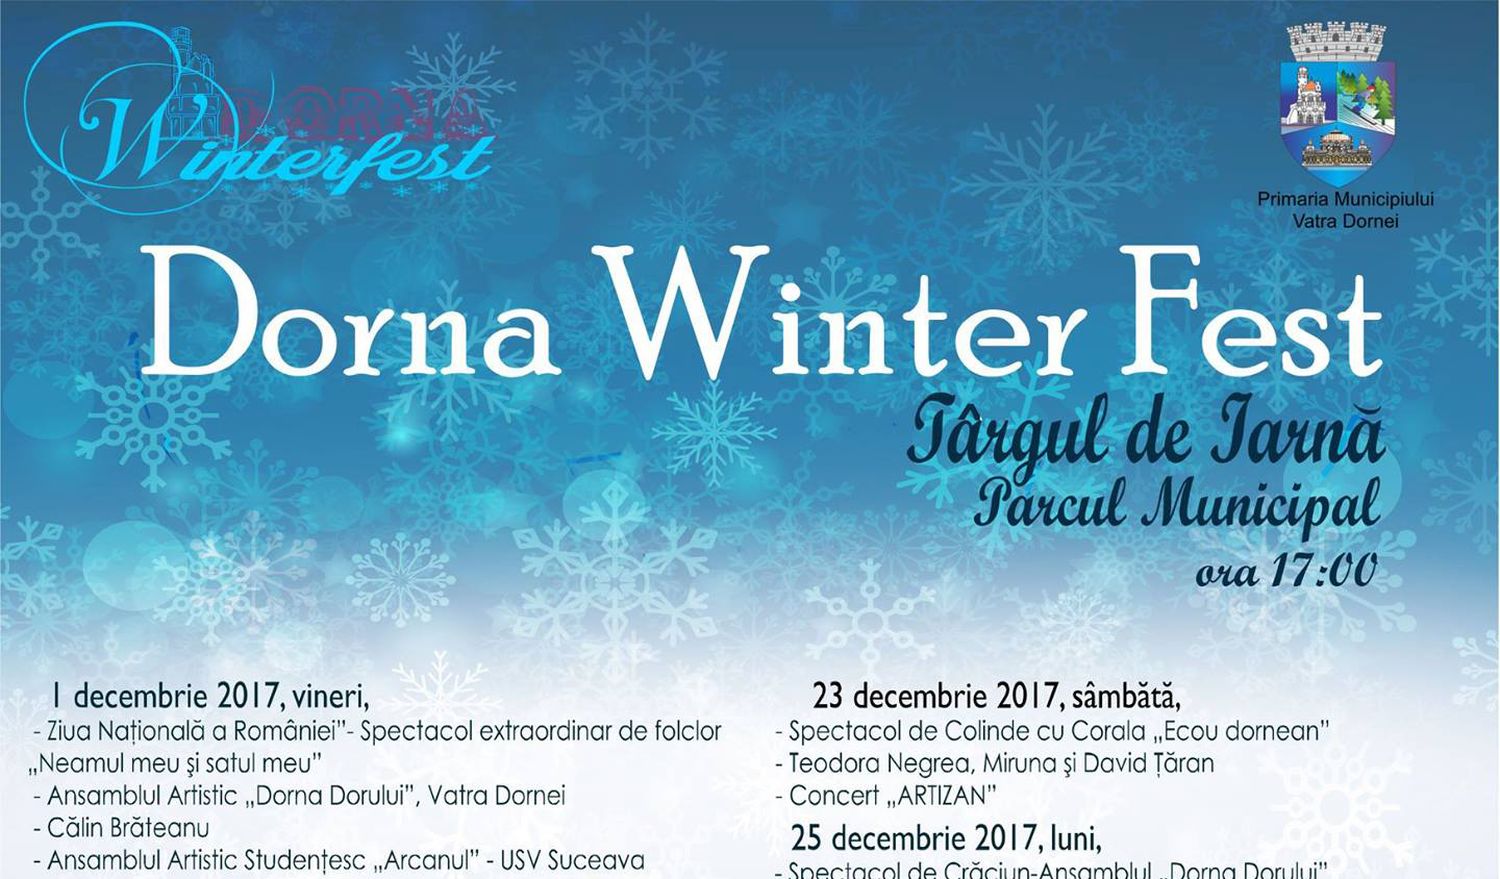 Dorna Winter Fest 2017: programul complet, activități, evenimente pentru turiști și recomandări